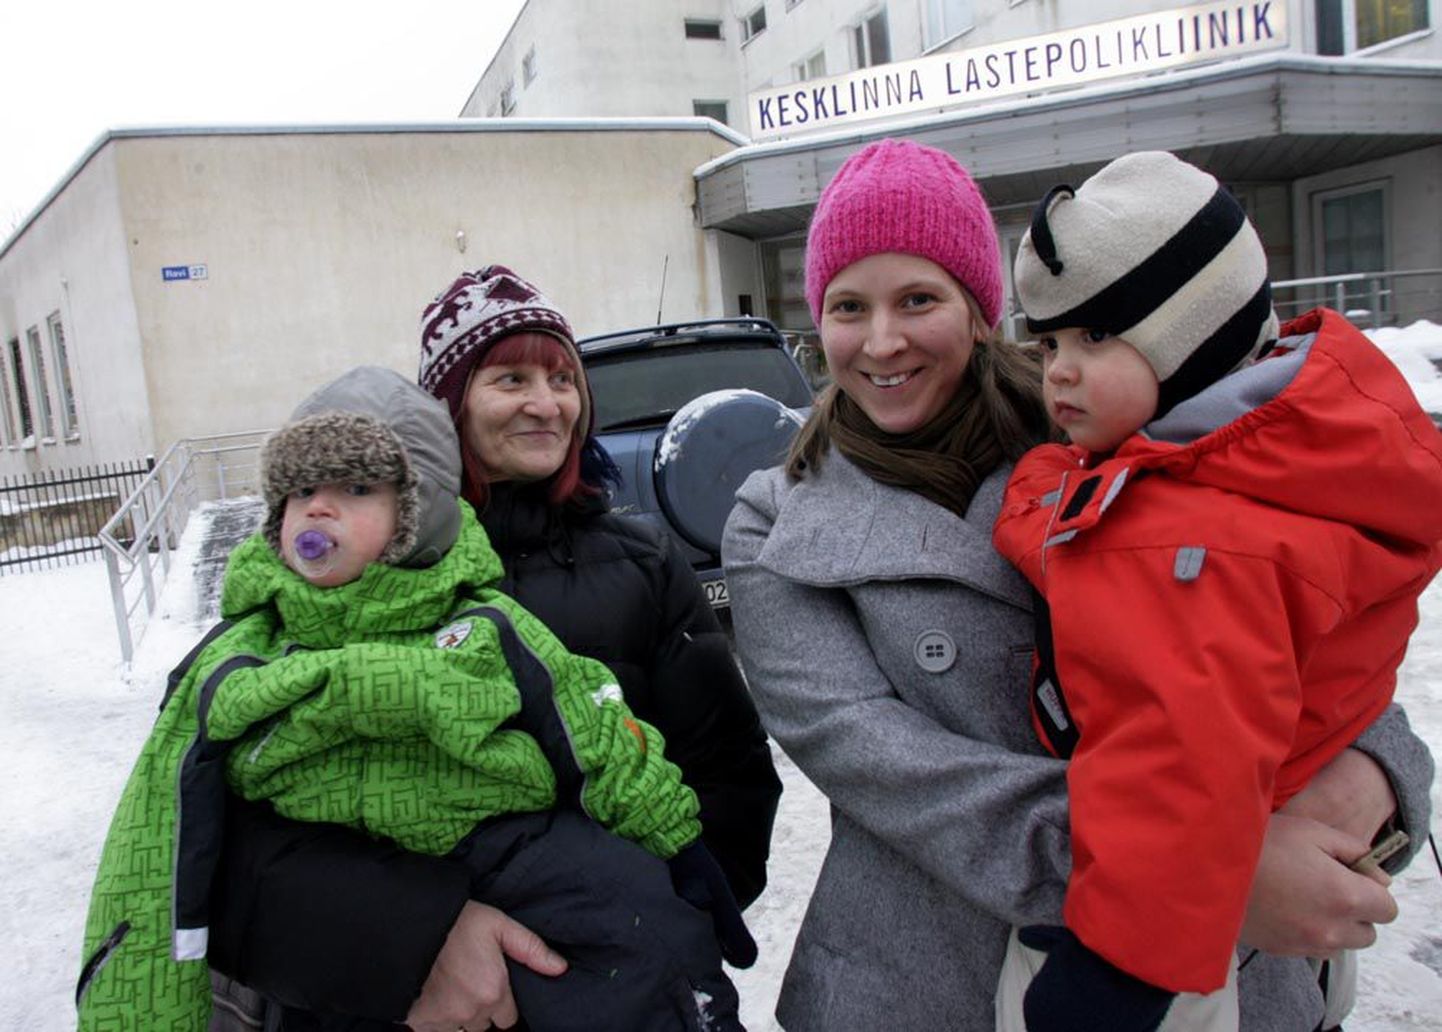 Maal elav viie lapse ema Virge Raasik on sunnitud linnas arsti juures käima, sest ta ei ole rahul maa-arstidega. Pildil on ta koos oma kaksikute Kärdi ja Kerdi ning nende vanaema Helgi Raasikuga Tallinnas Kesklinna lastepolikliiniku ees.